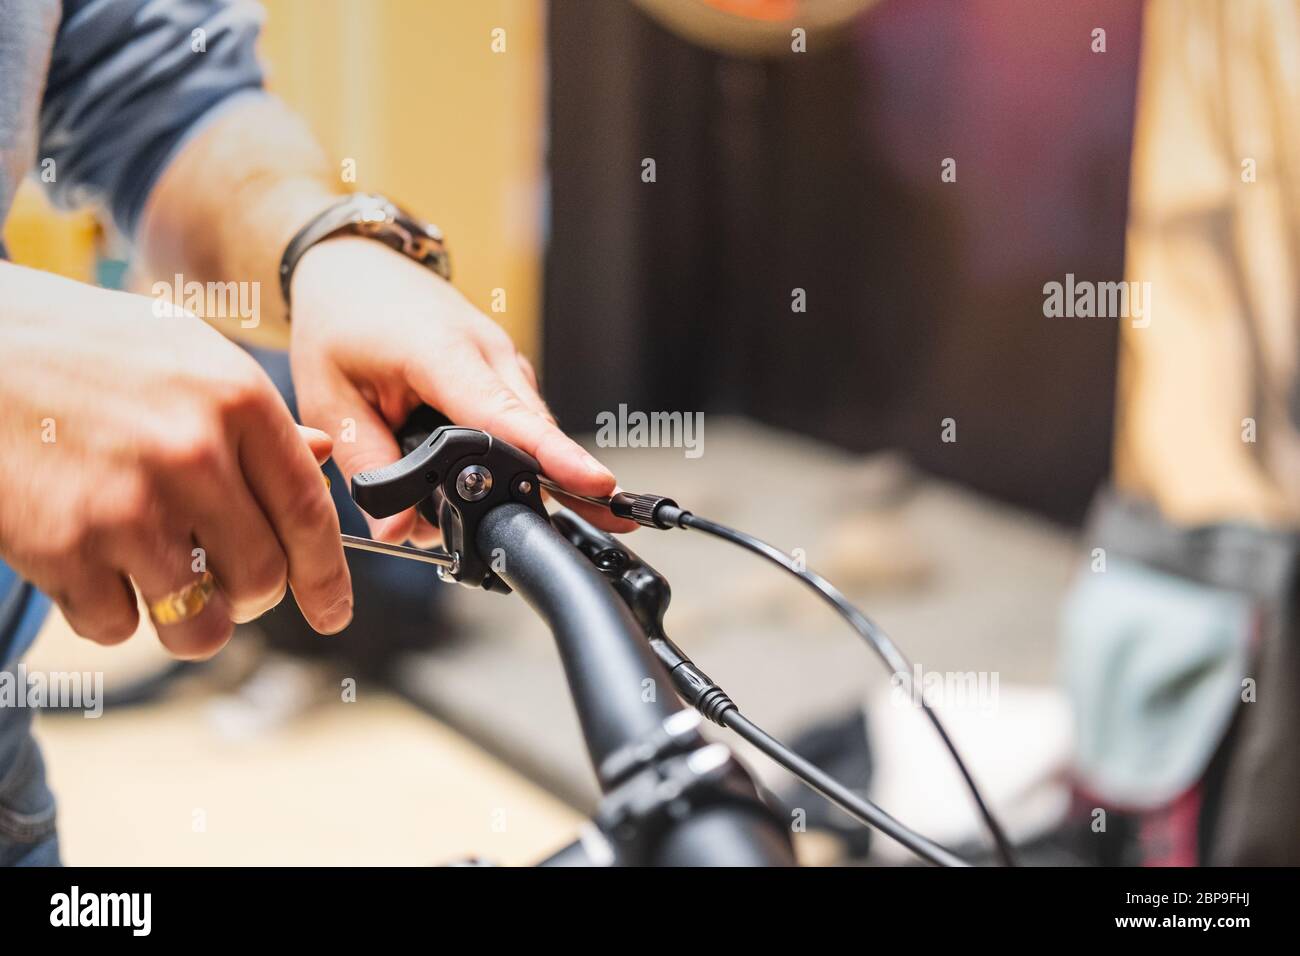 Impostazione delle pause di una bicicletta, vista ravvicinata. Mani umane che riparano una bicicletta in un negozio locale di biciclette Foto Stock